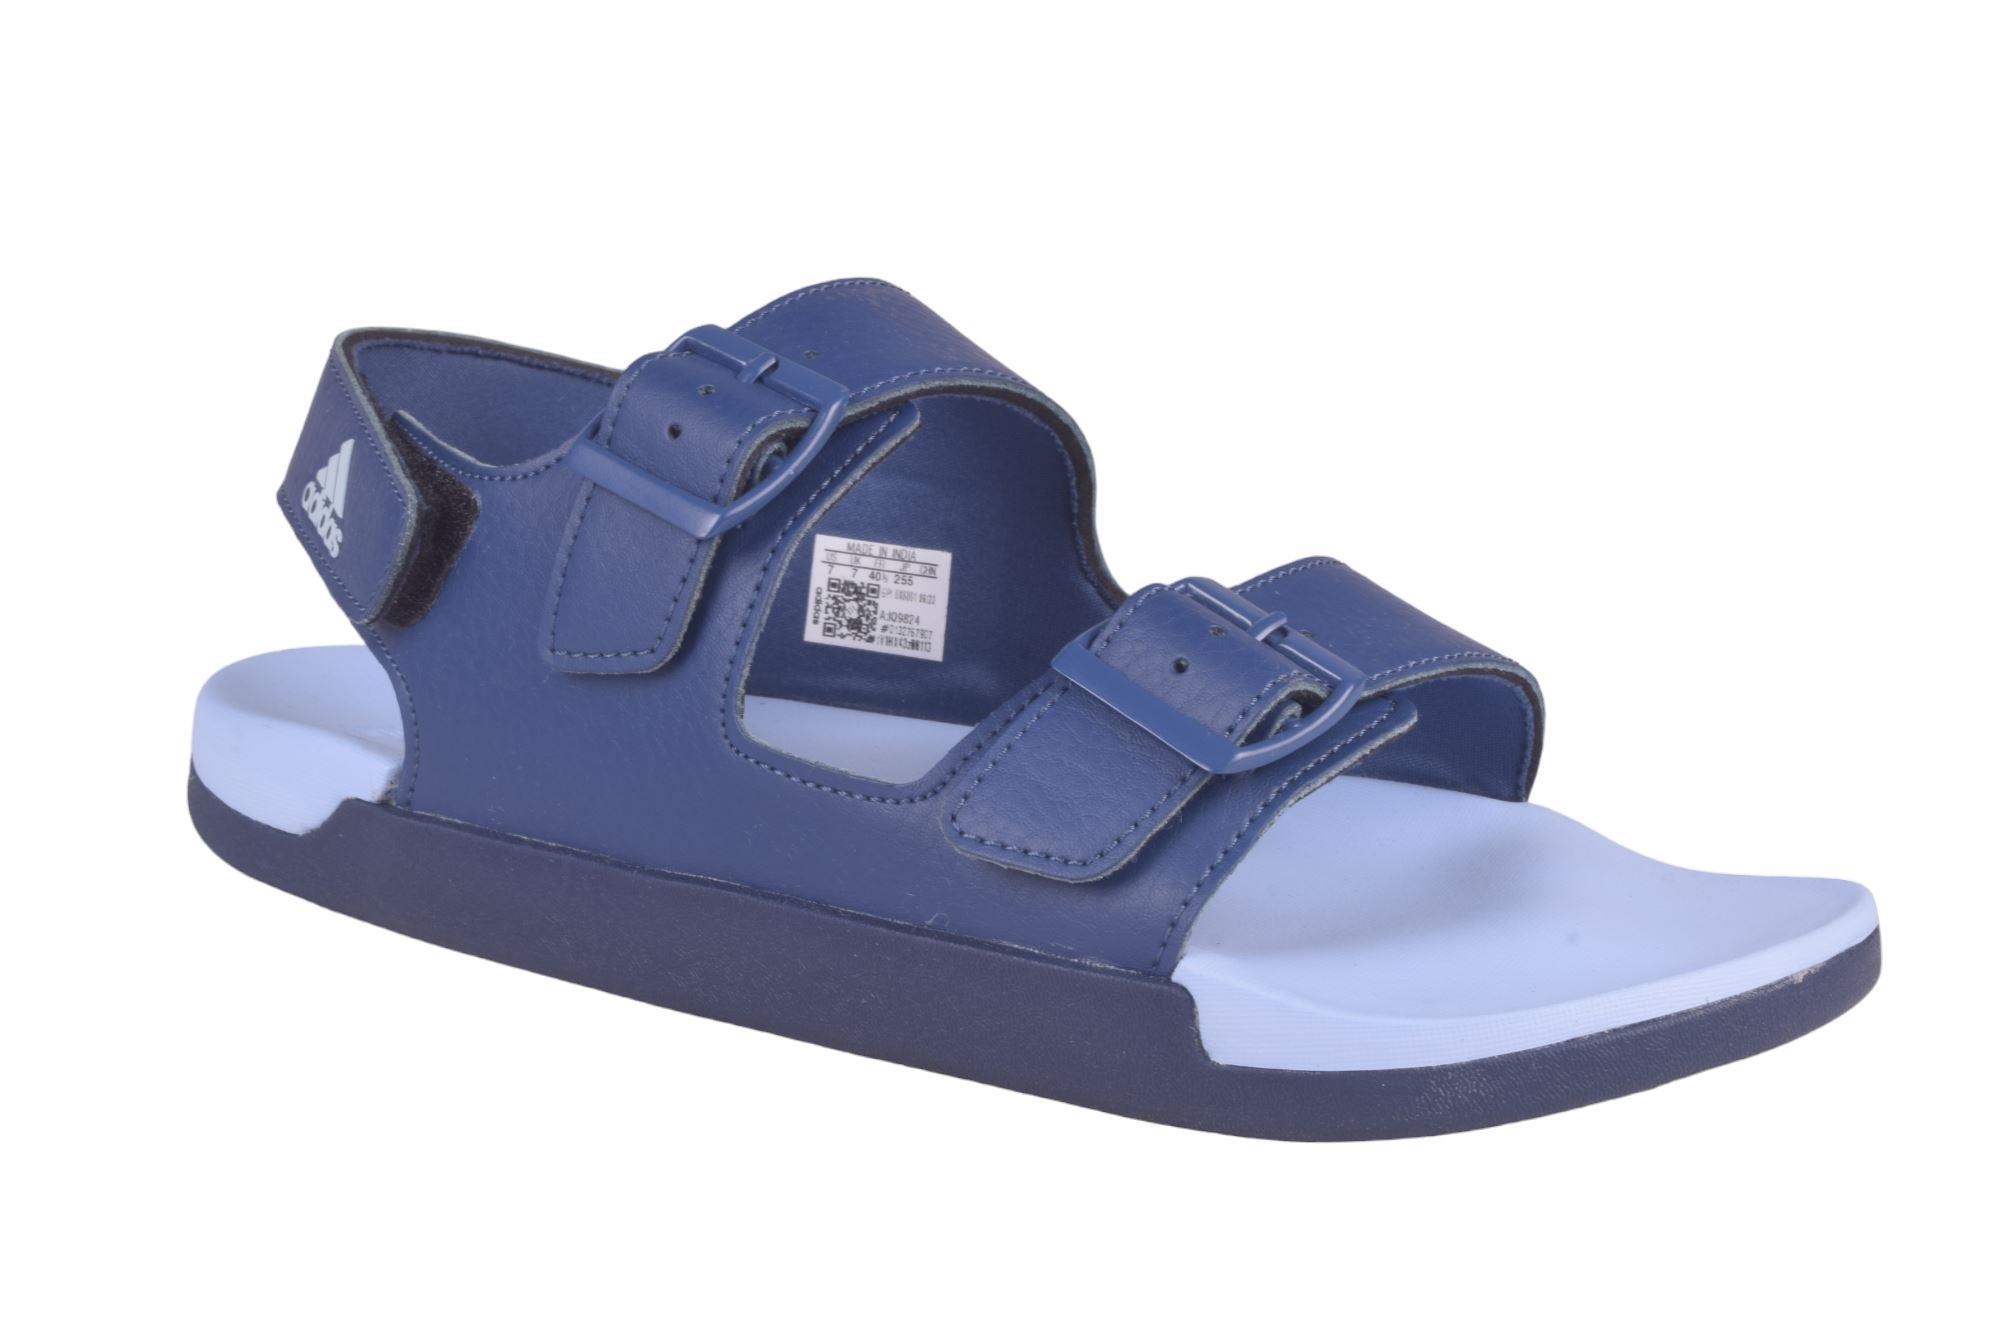 Buy Men Blue Casual Sandals Online | Walkway Shoes